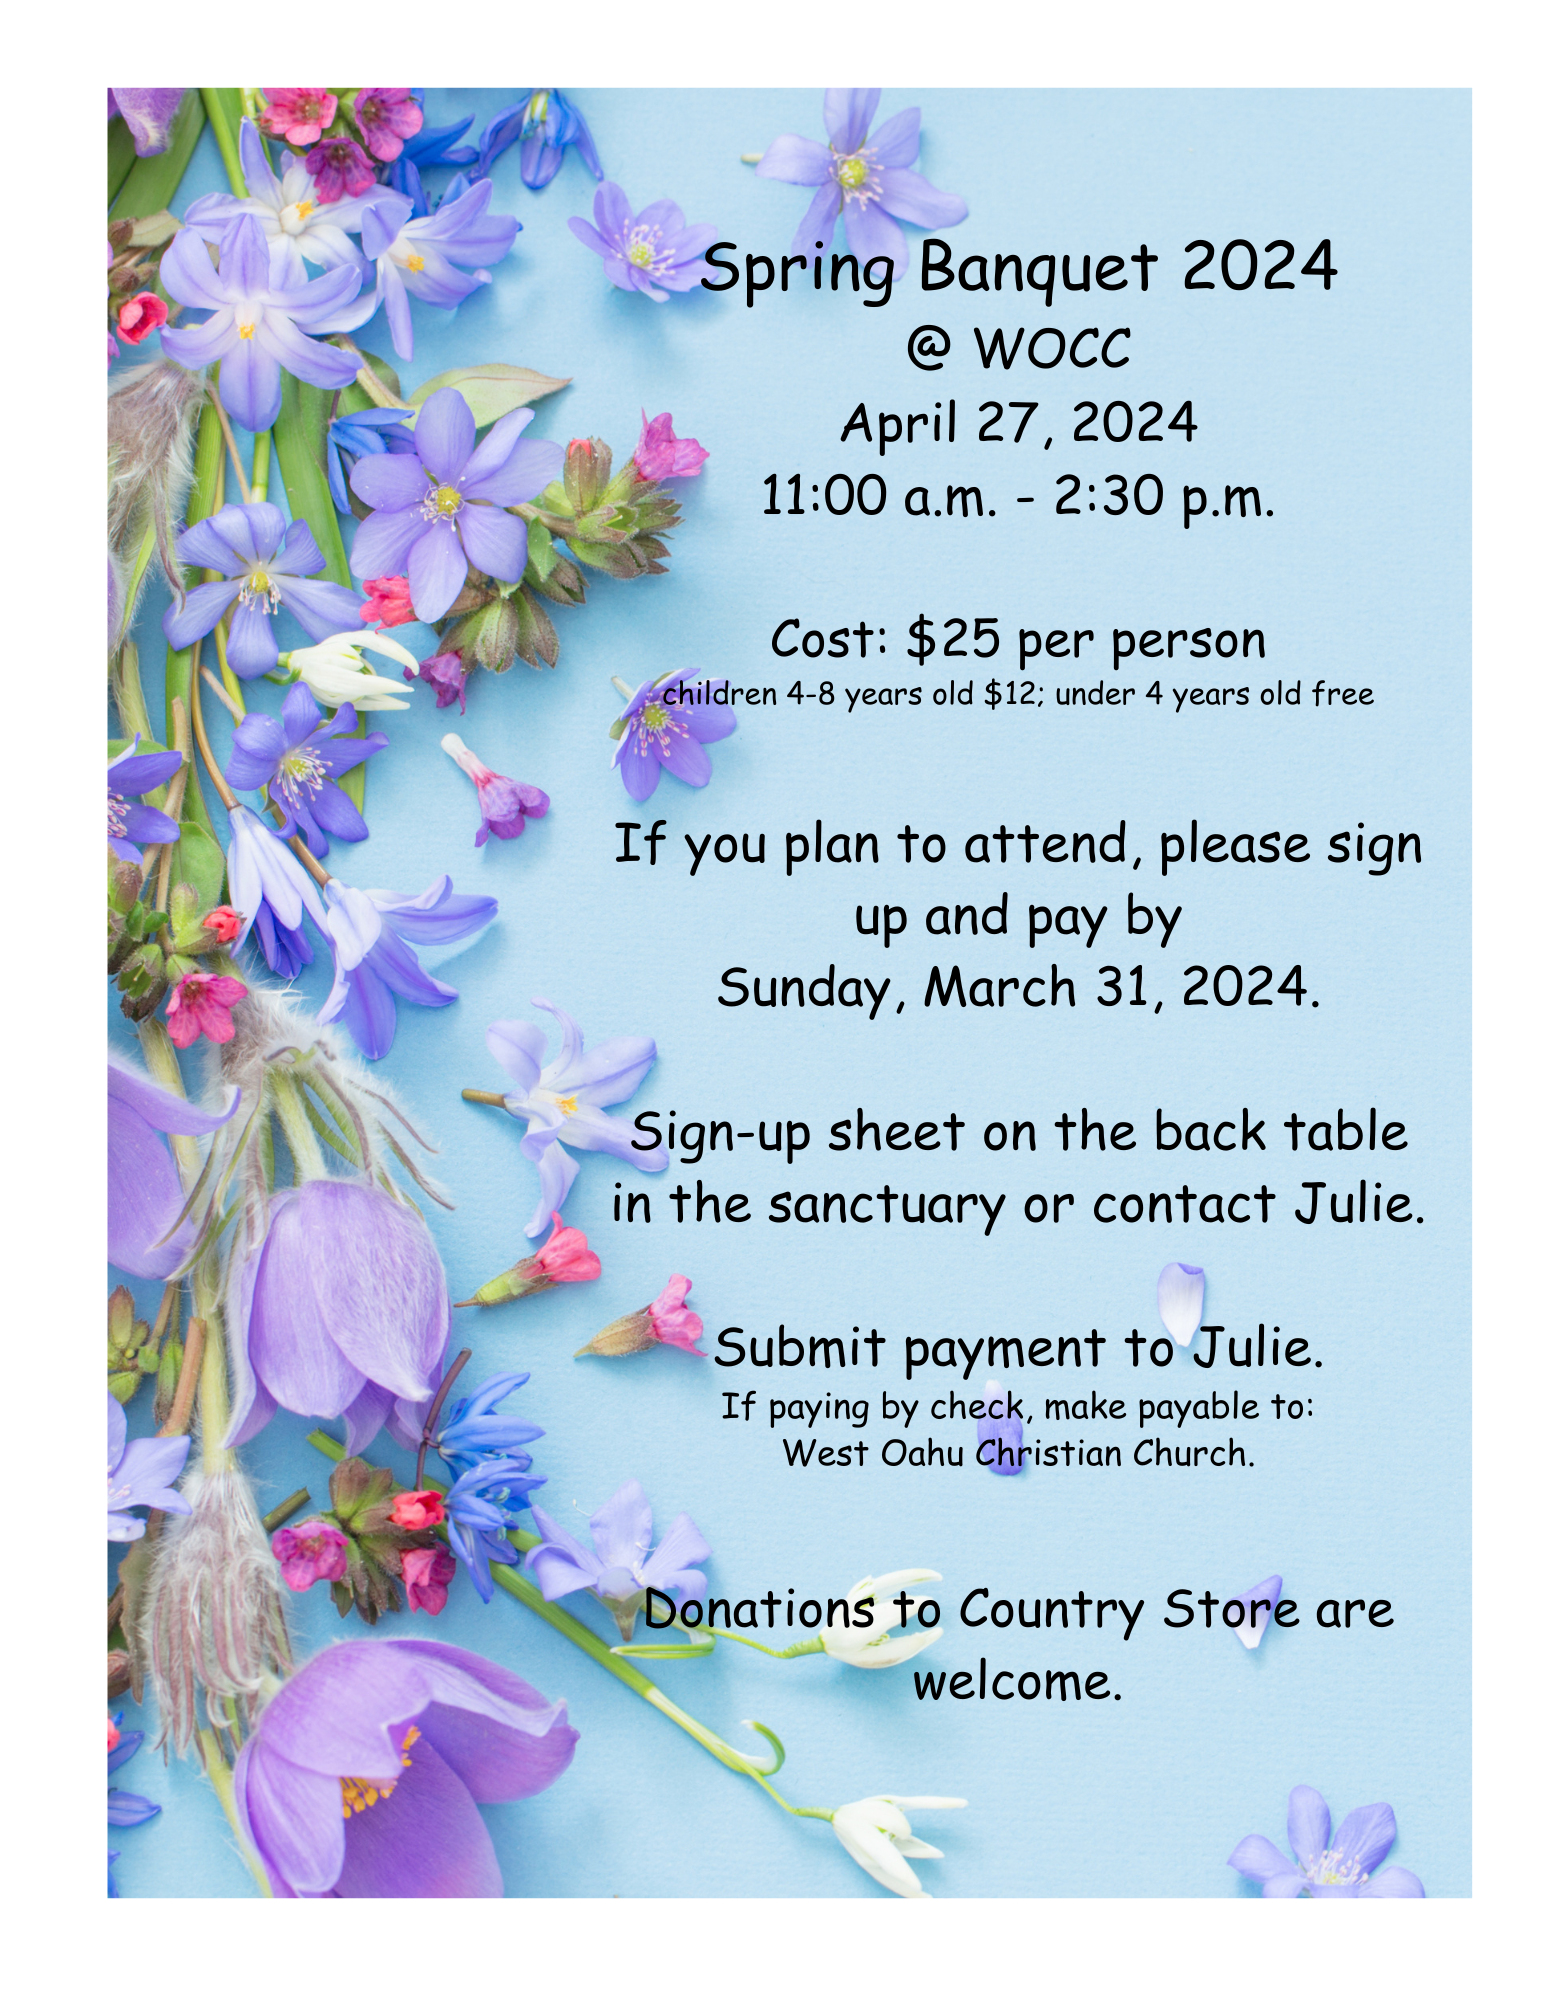 Spring Banquet 2024 Flyer